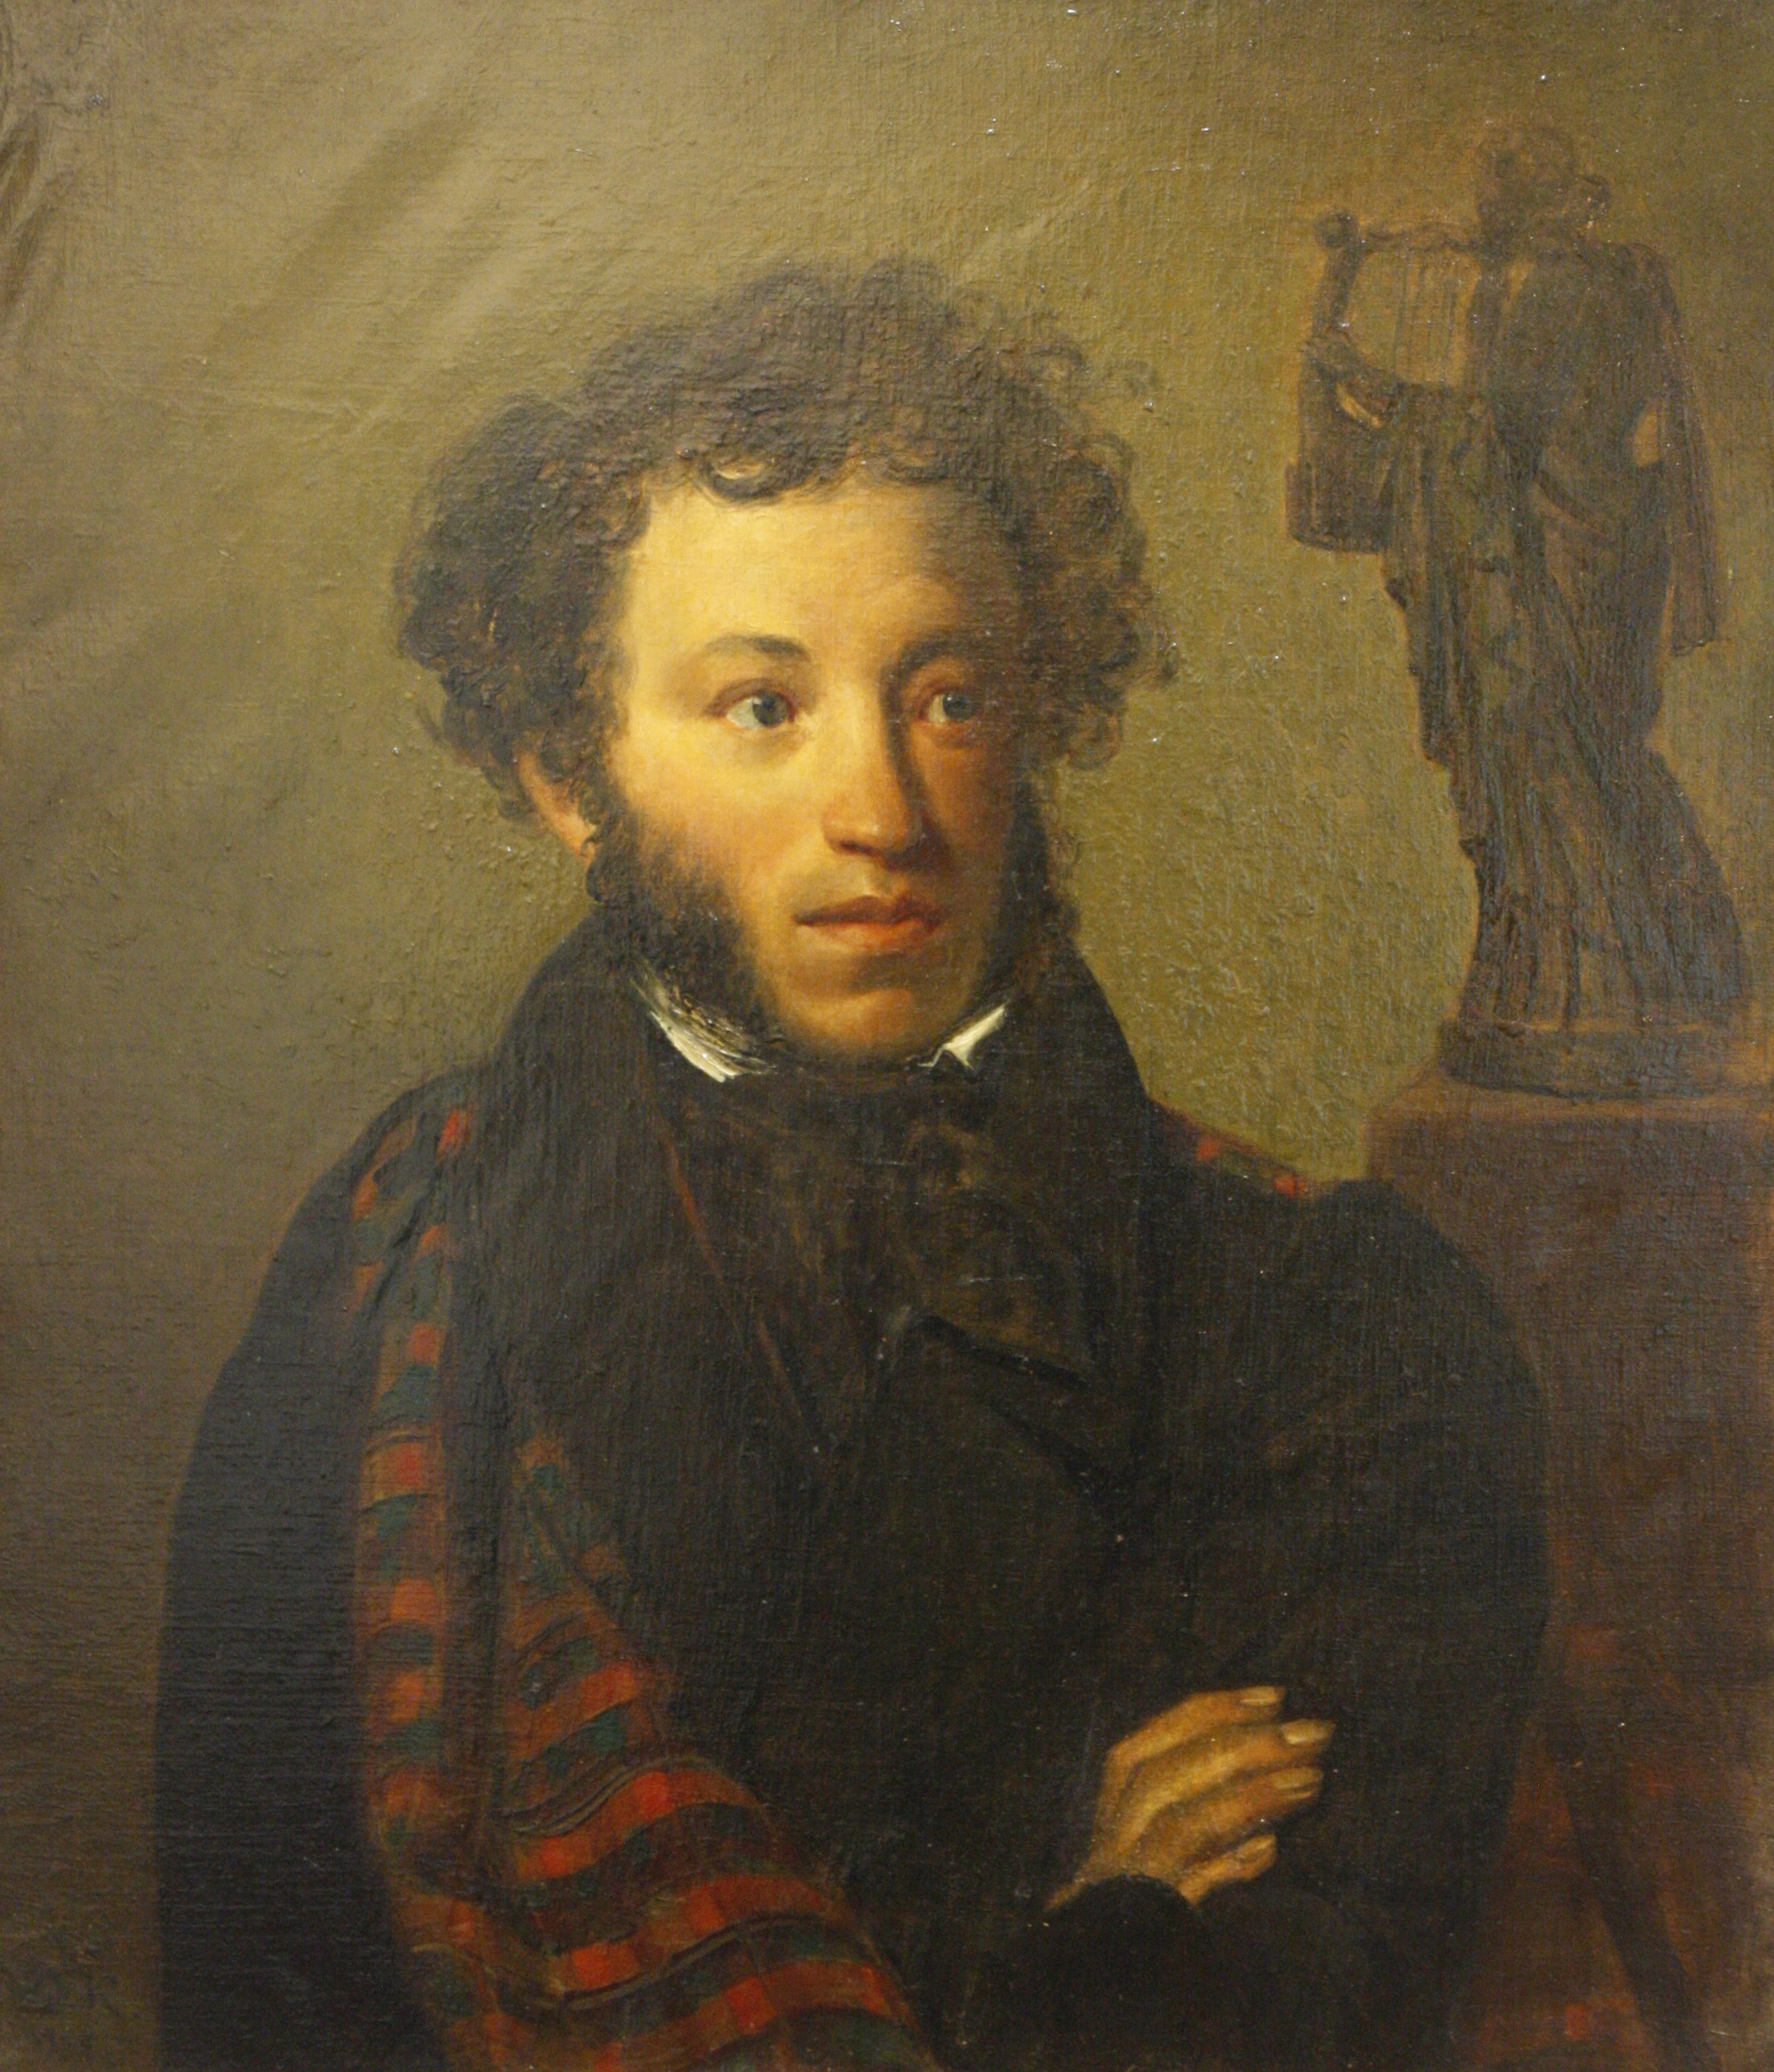 Фотография пушкина александра сергеевича пушкина